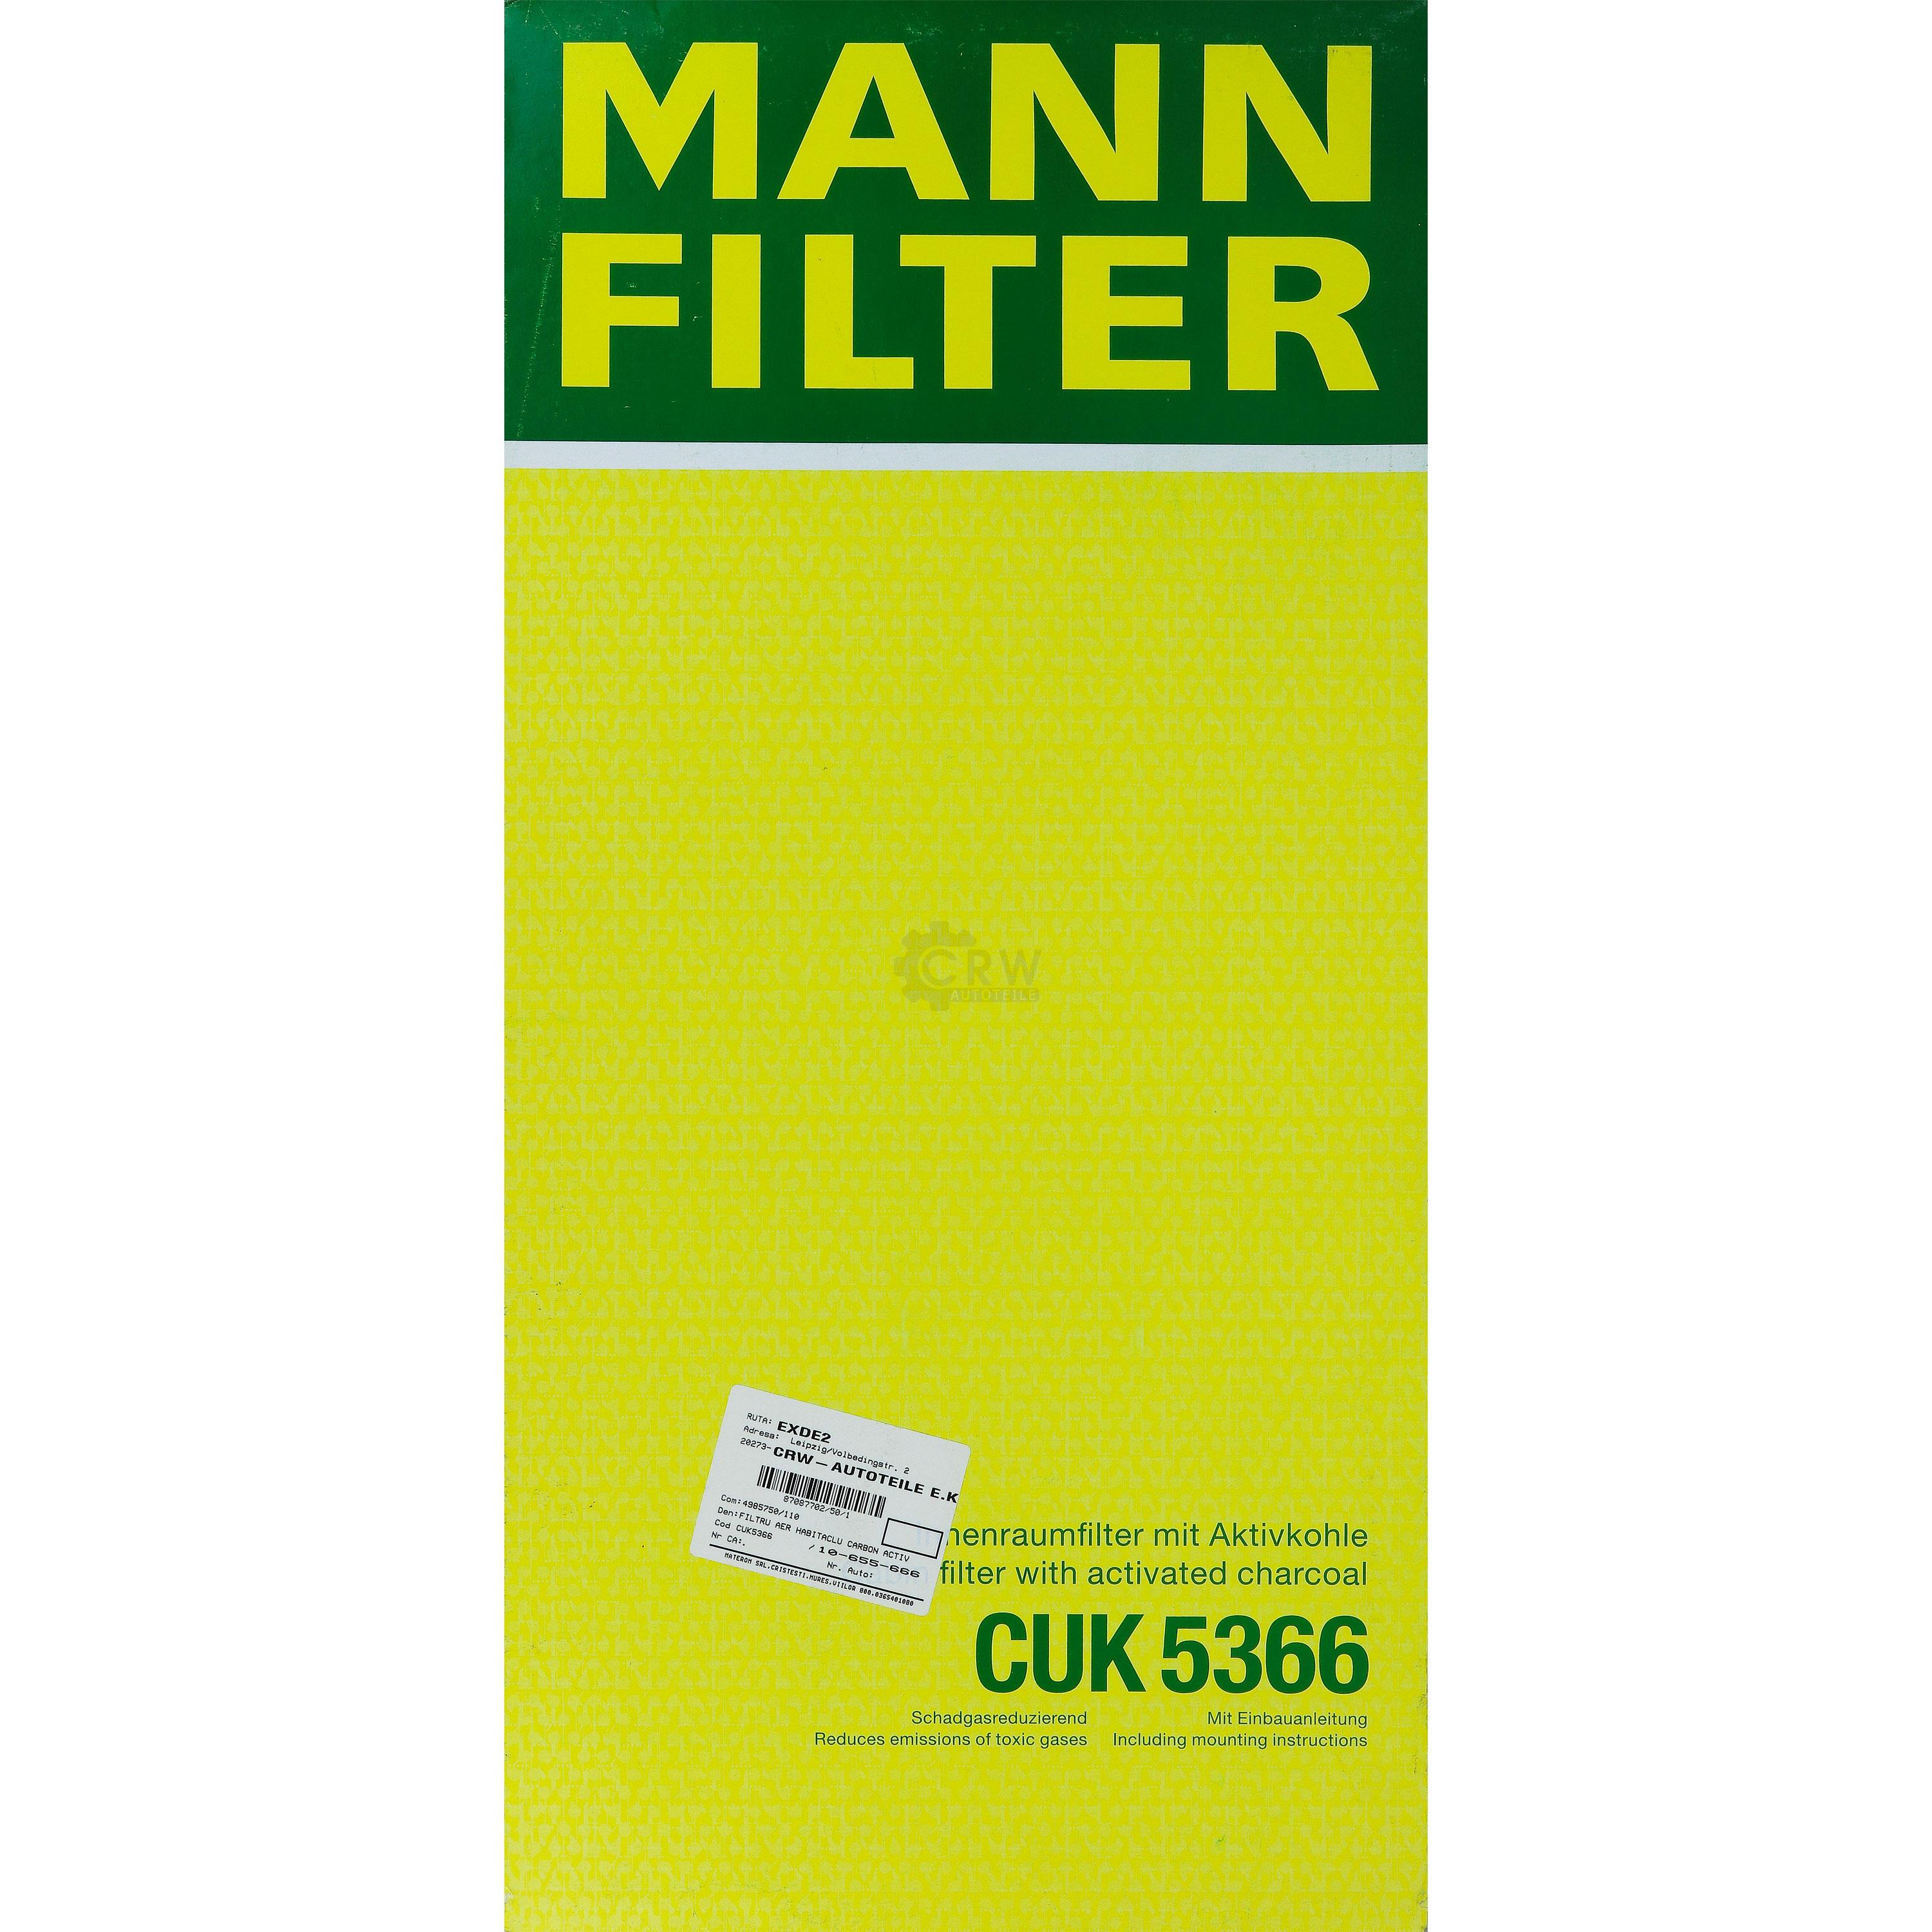 MANN-FILTER Innenraumfilter Pollenfilter Aktivkohle CUK 5366